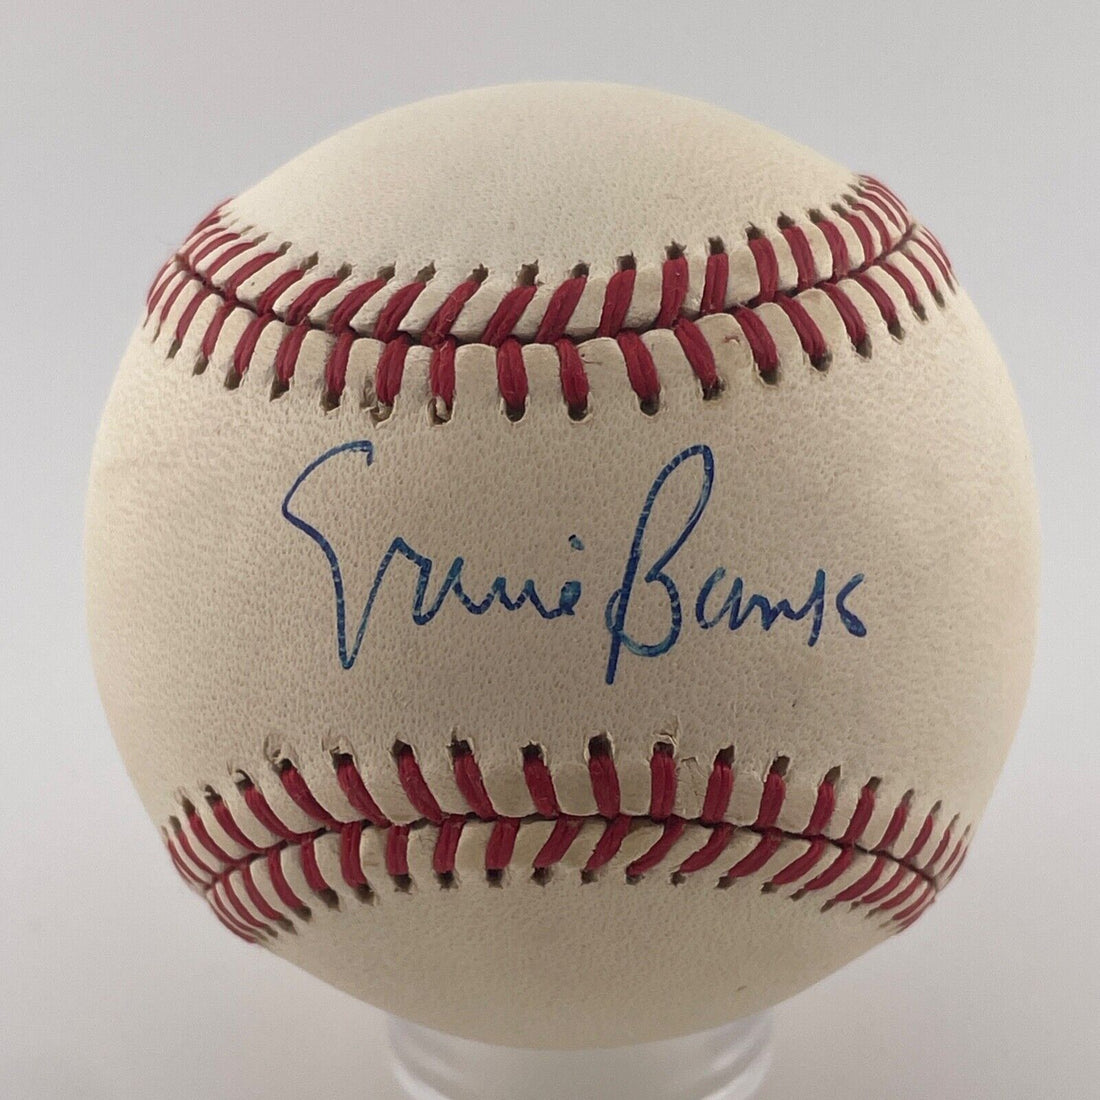 Ernie Banks Single Signed Baseball. Chicago Cubs. JSA